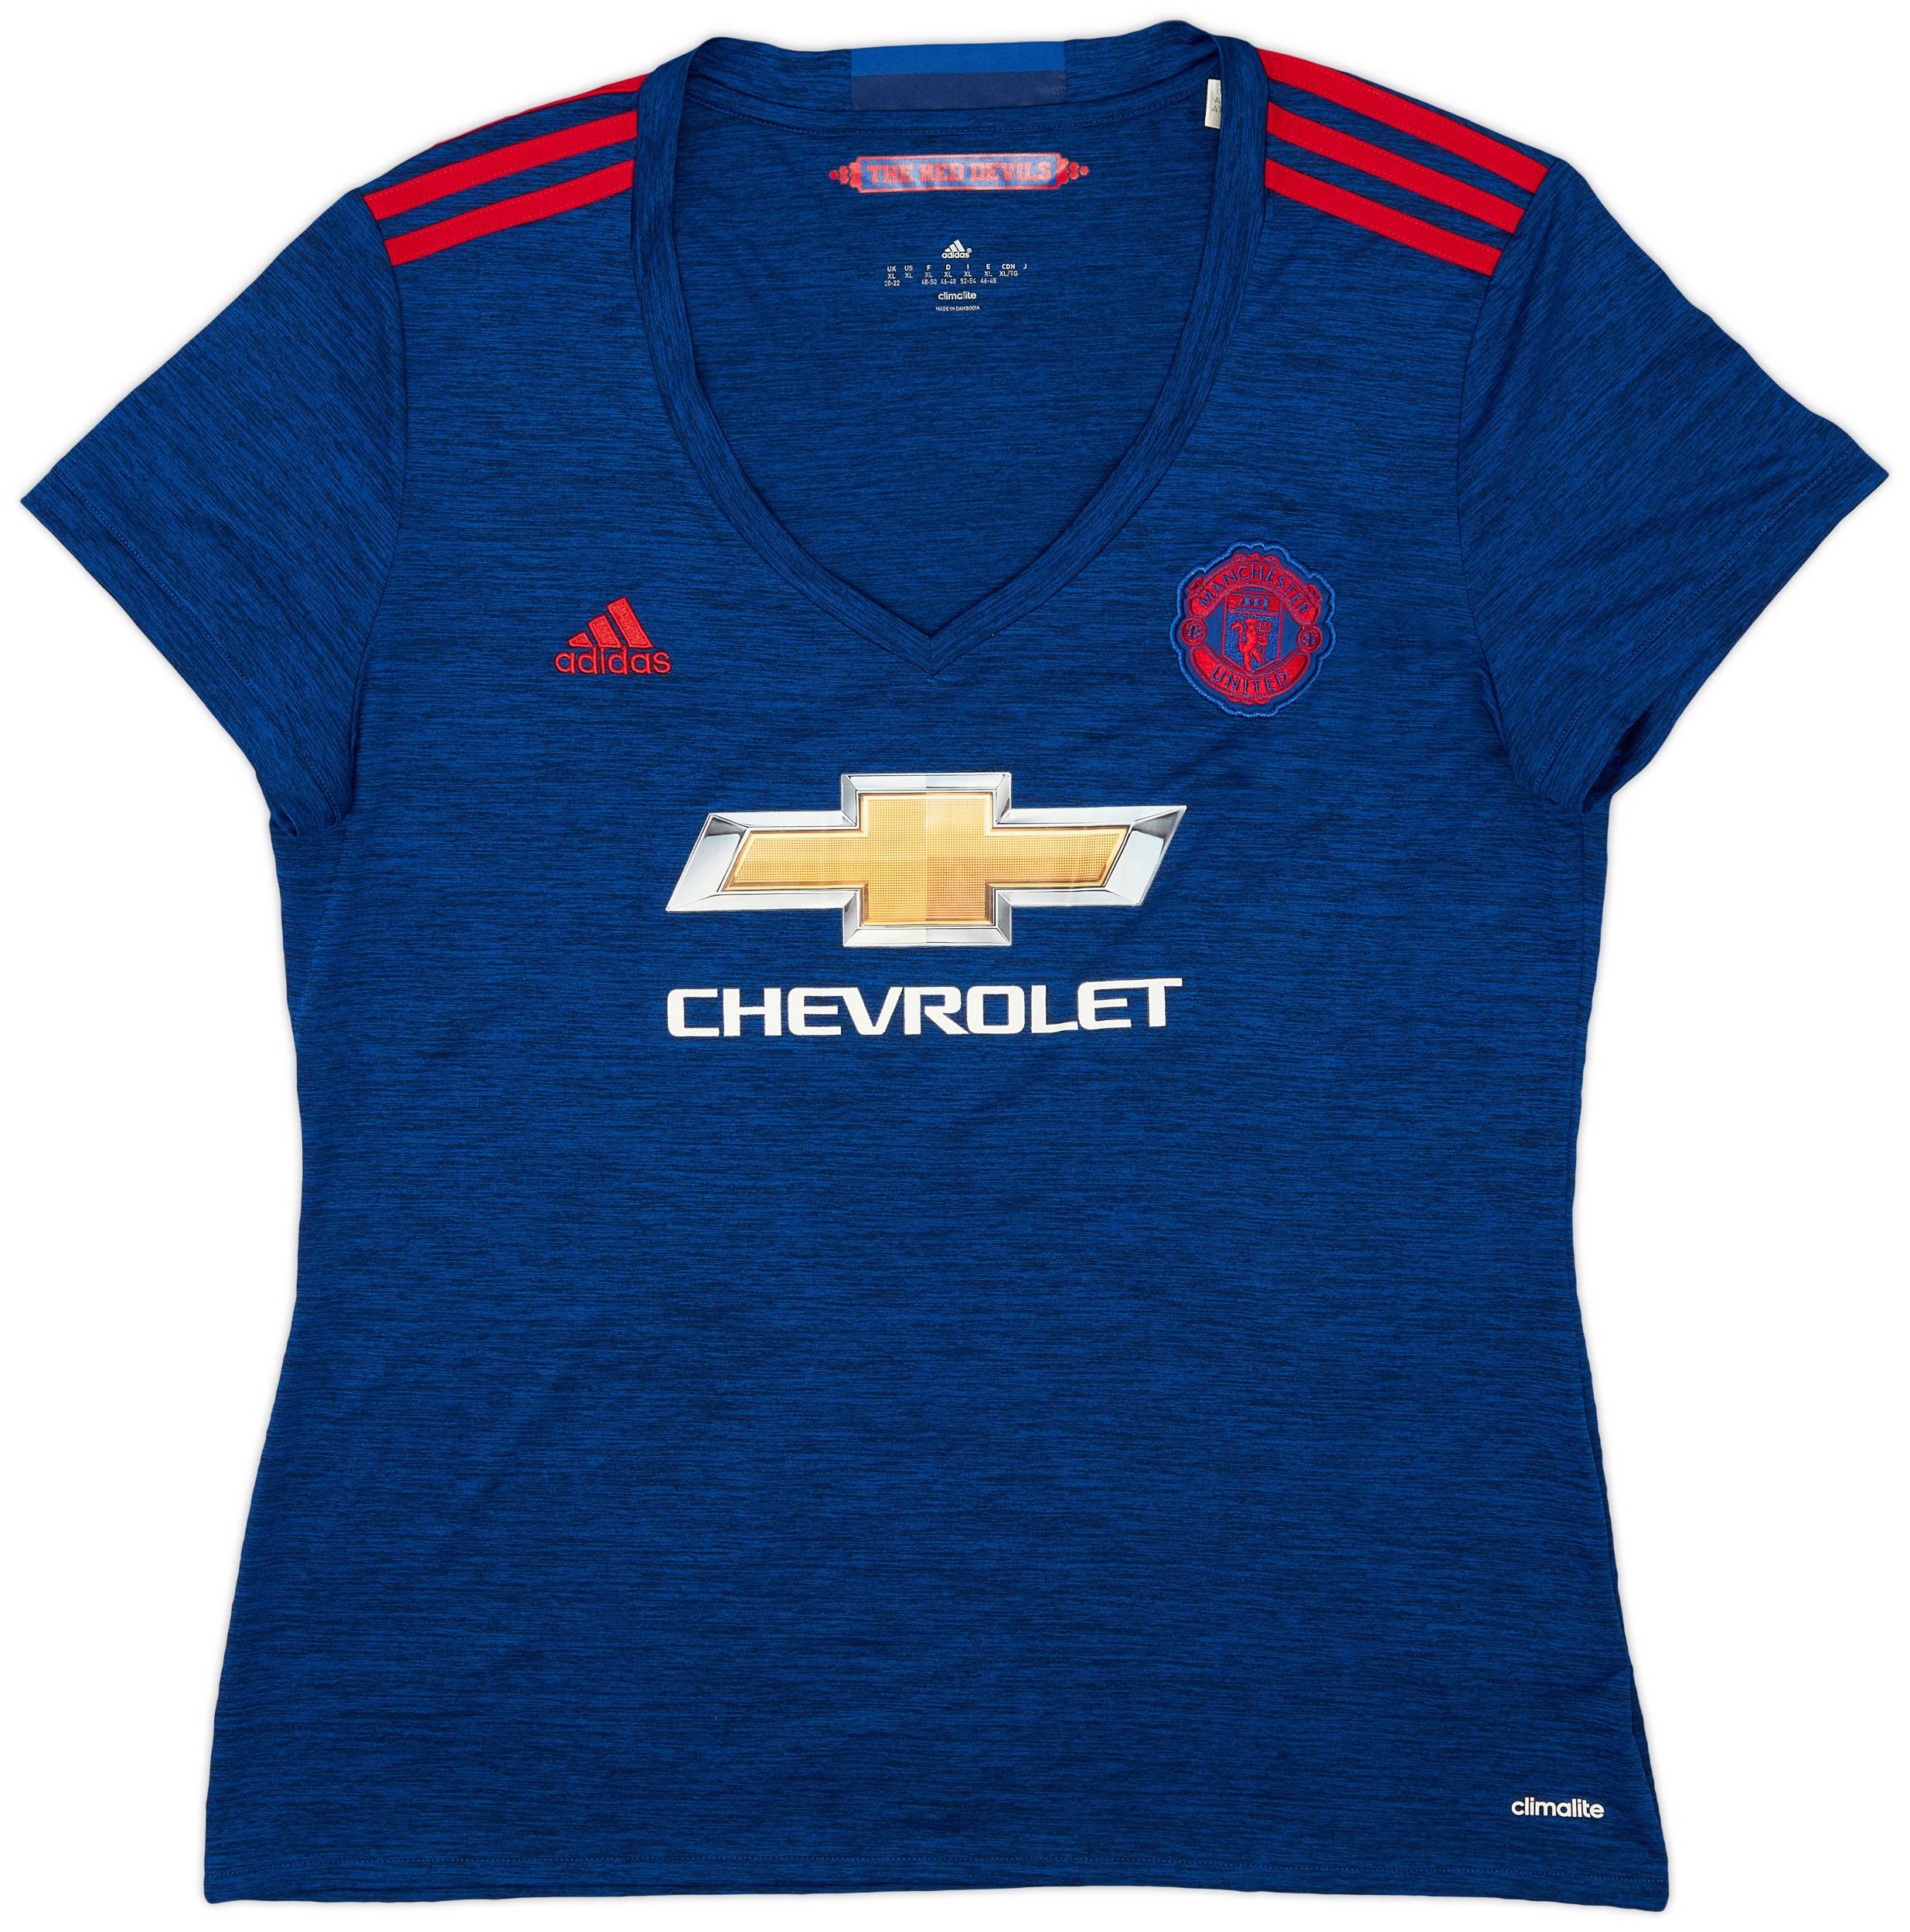 2016-17 Manchester United Away Shirt - 9/10 - (Women's XL)